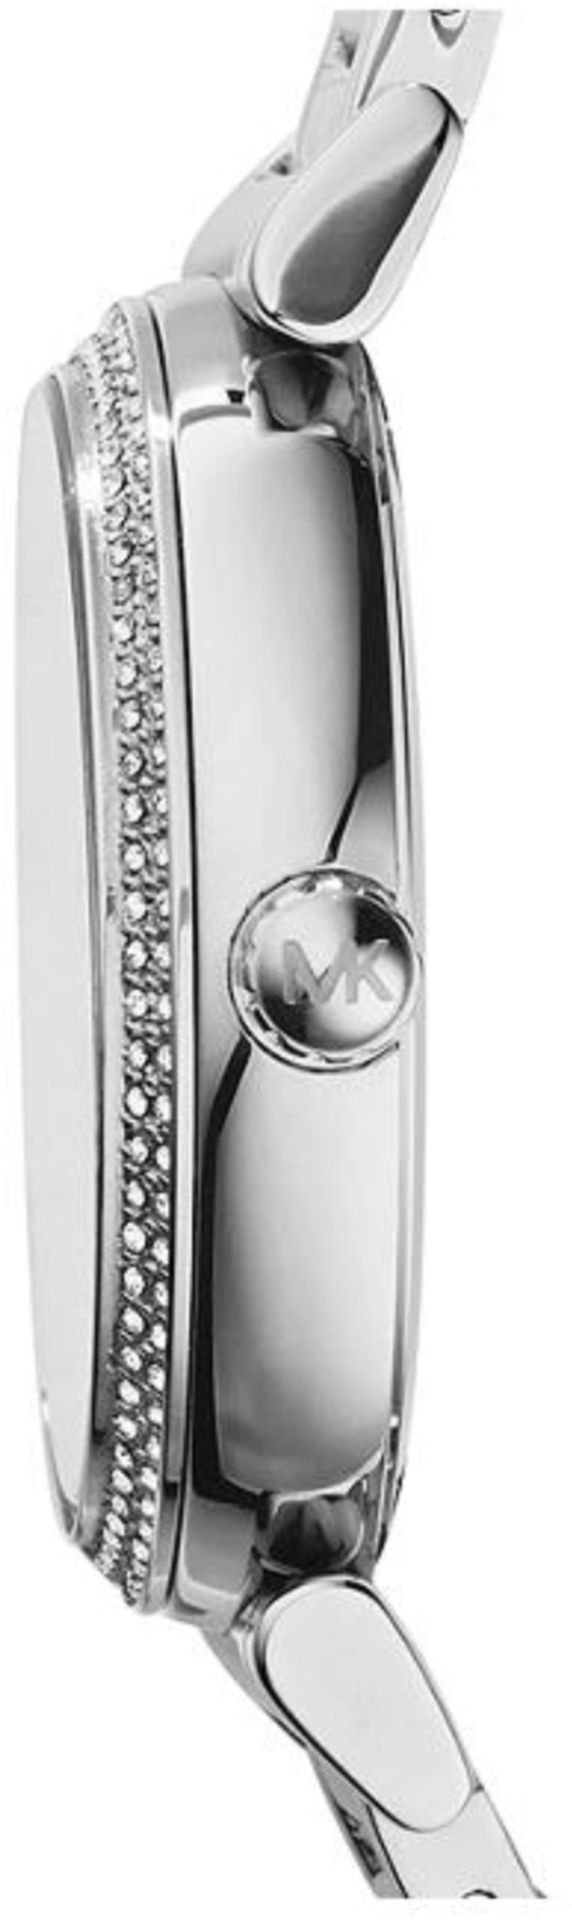 Michael Kors MK3355 Ladies Catlin Bracelet Silver Watch - Image 5 of 8